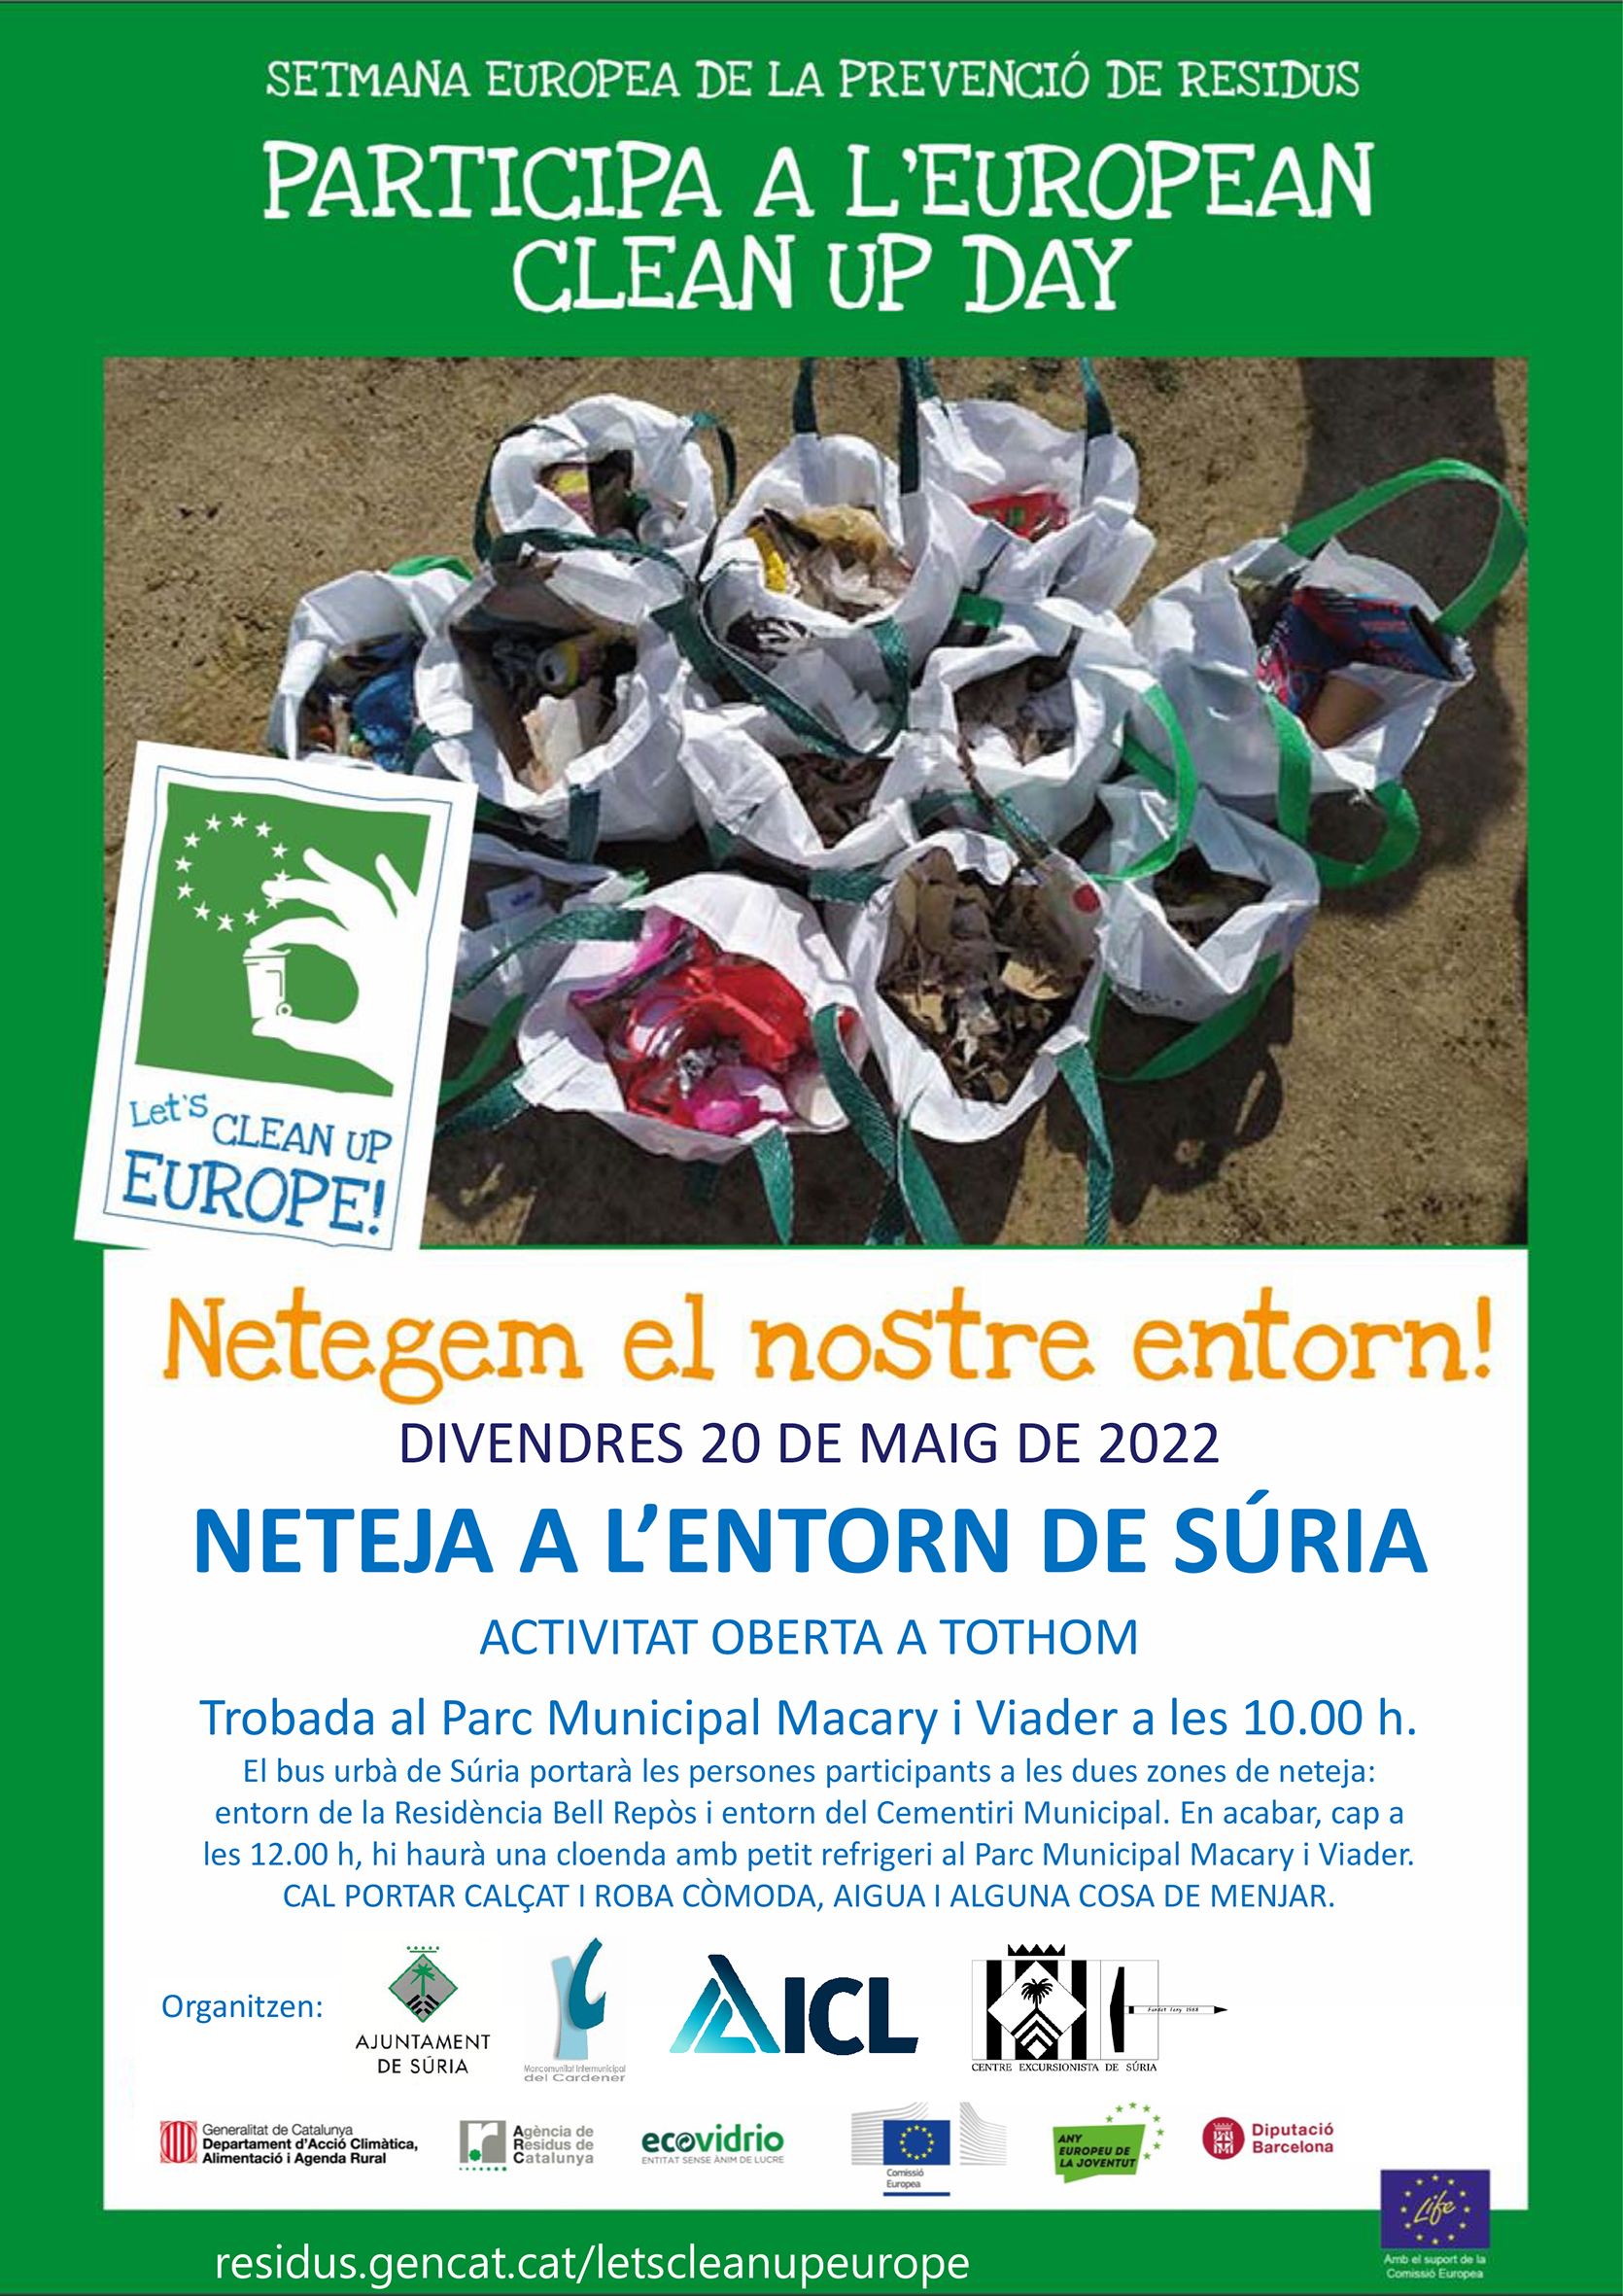 Setmana Europea de la Prevenció de Residus: acció de neteja a l'entorn de Súria